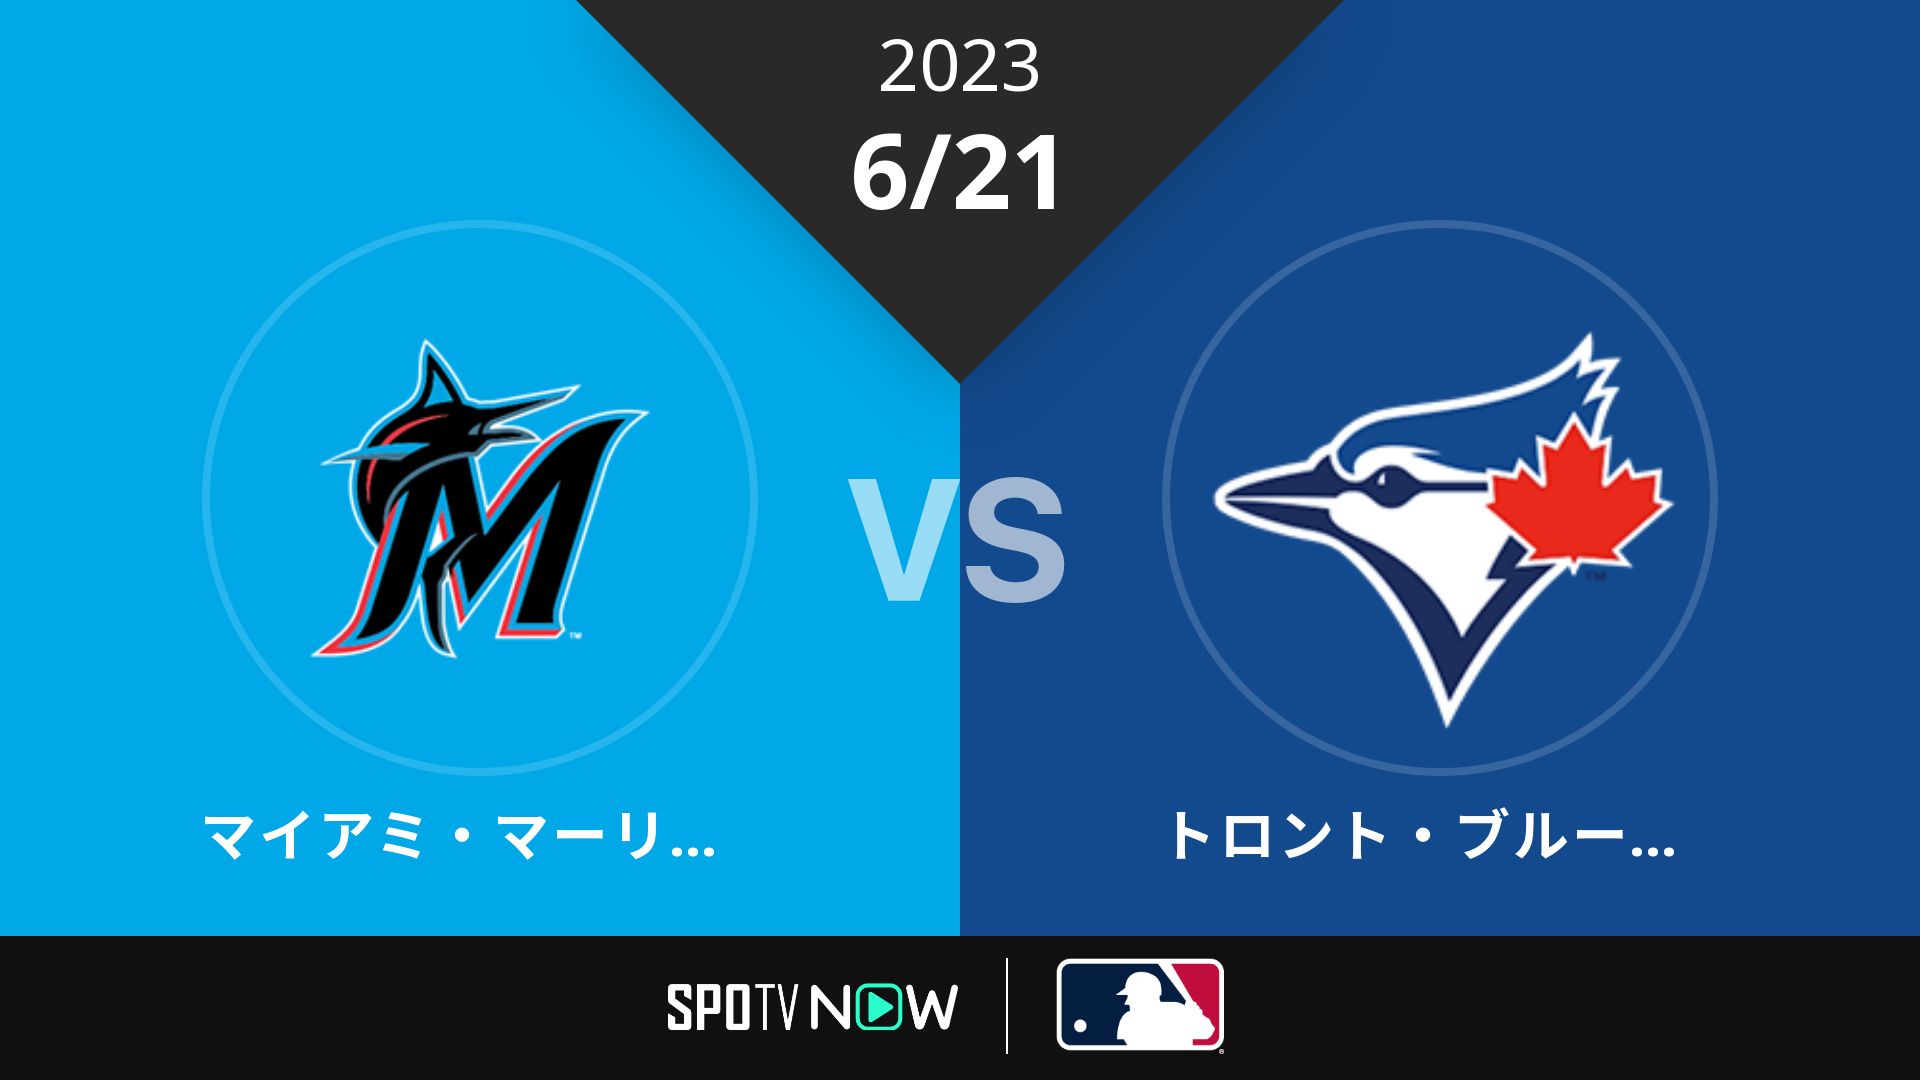 2023/6/21 マーリンズ vs ブルージェイズ [MLB]